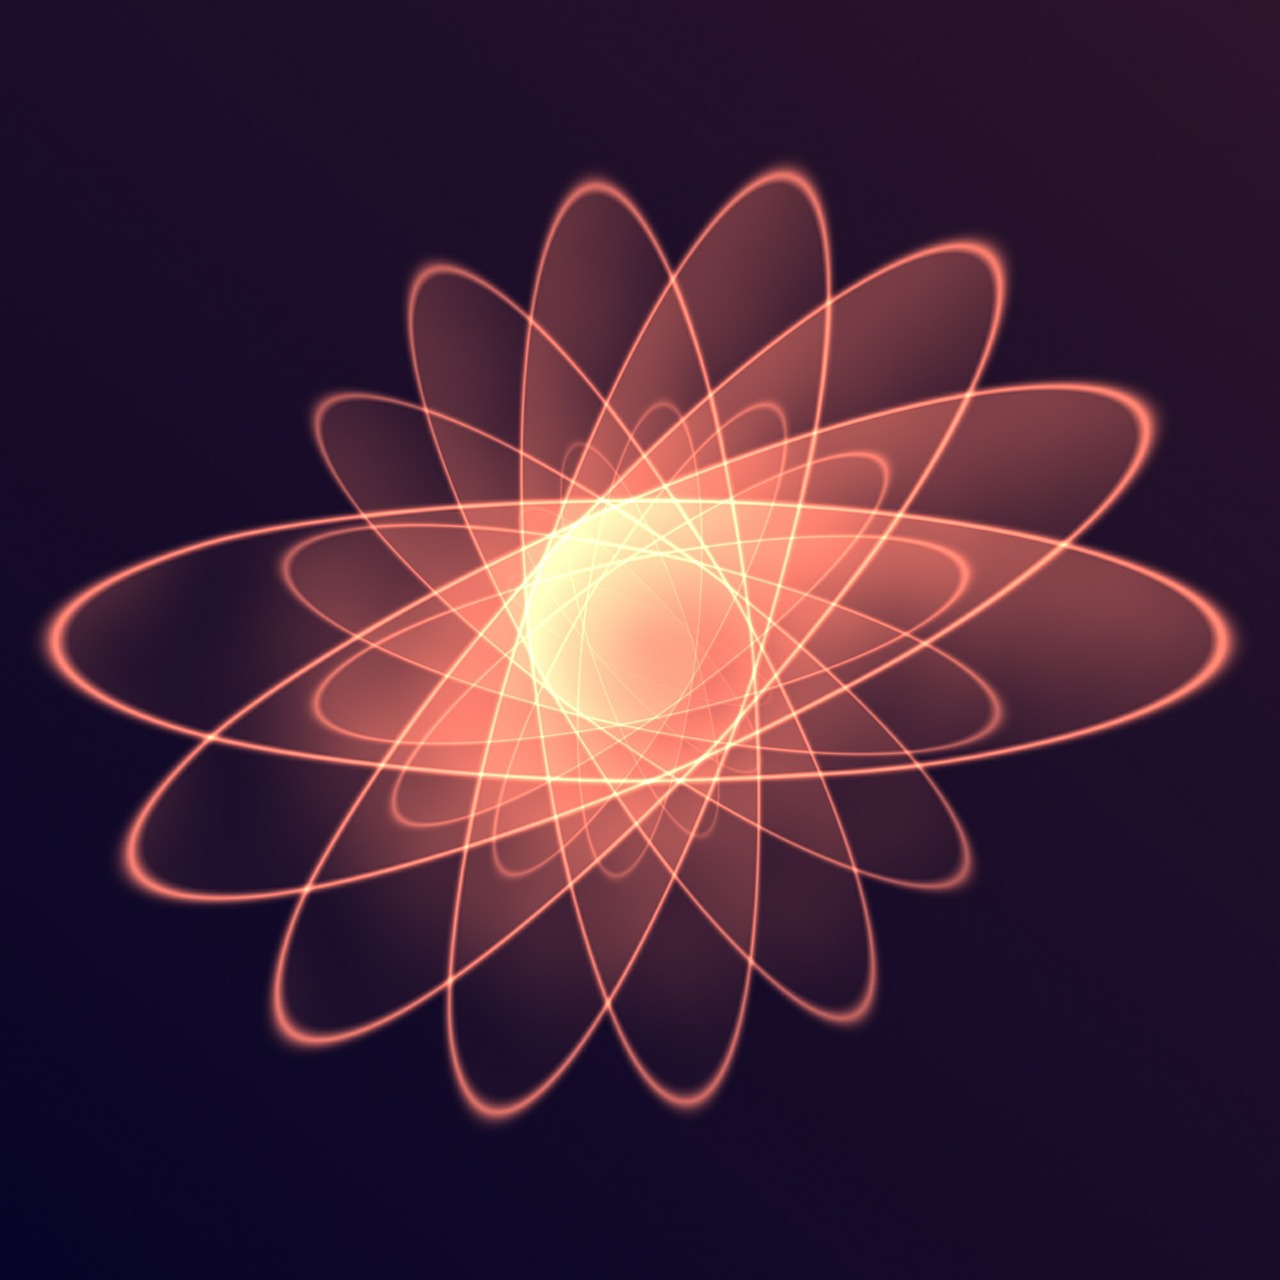 lichtspiel spirals atom free photo